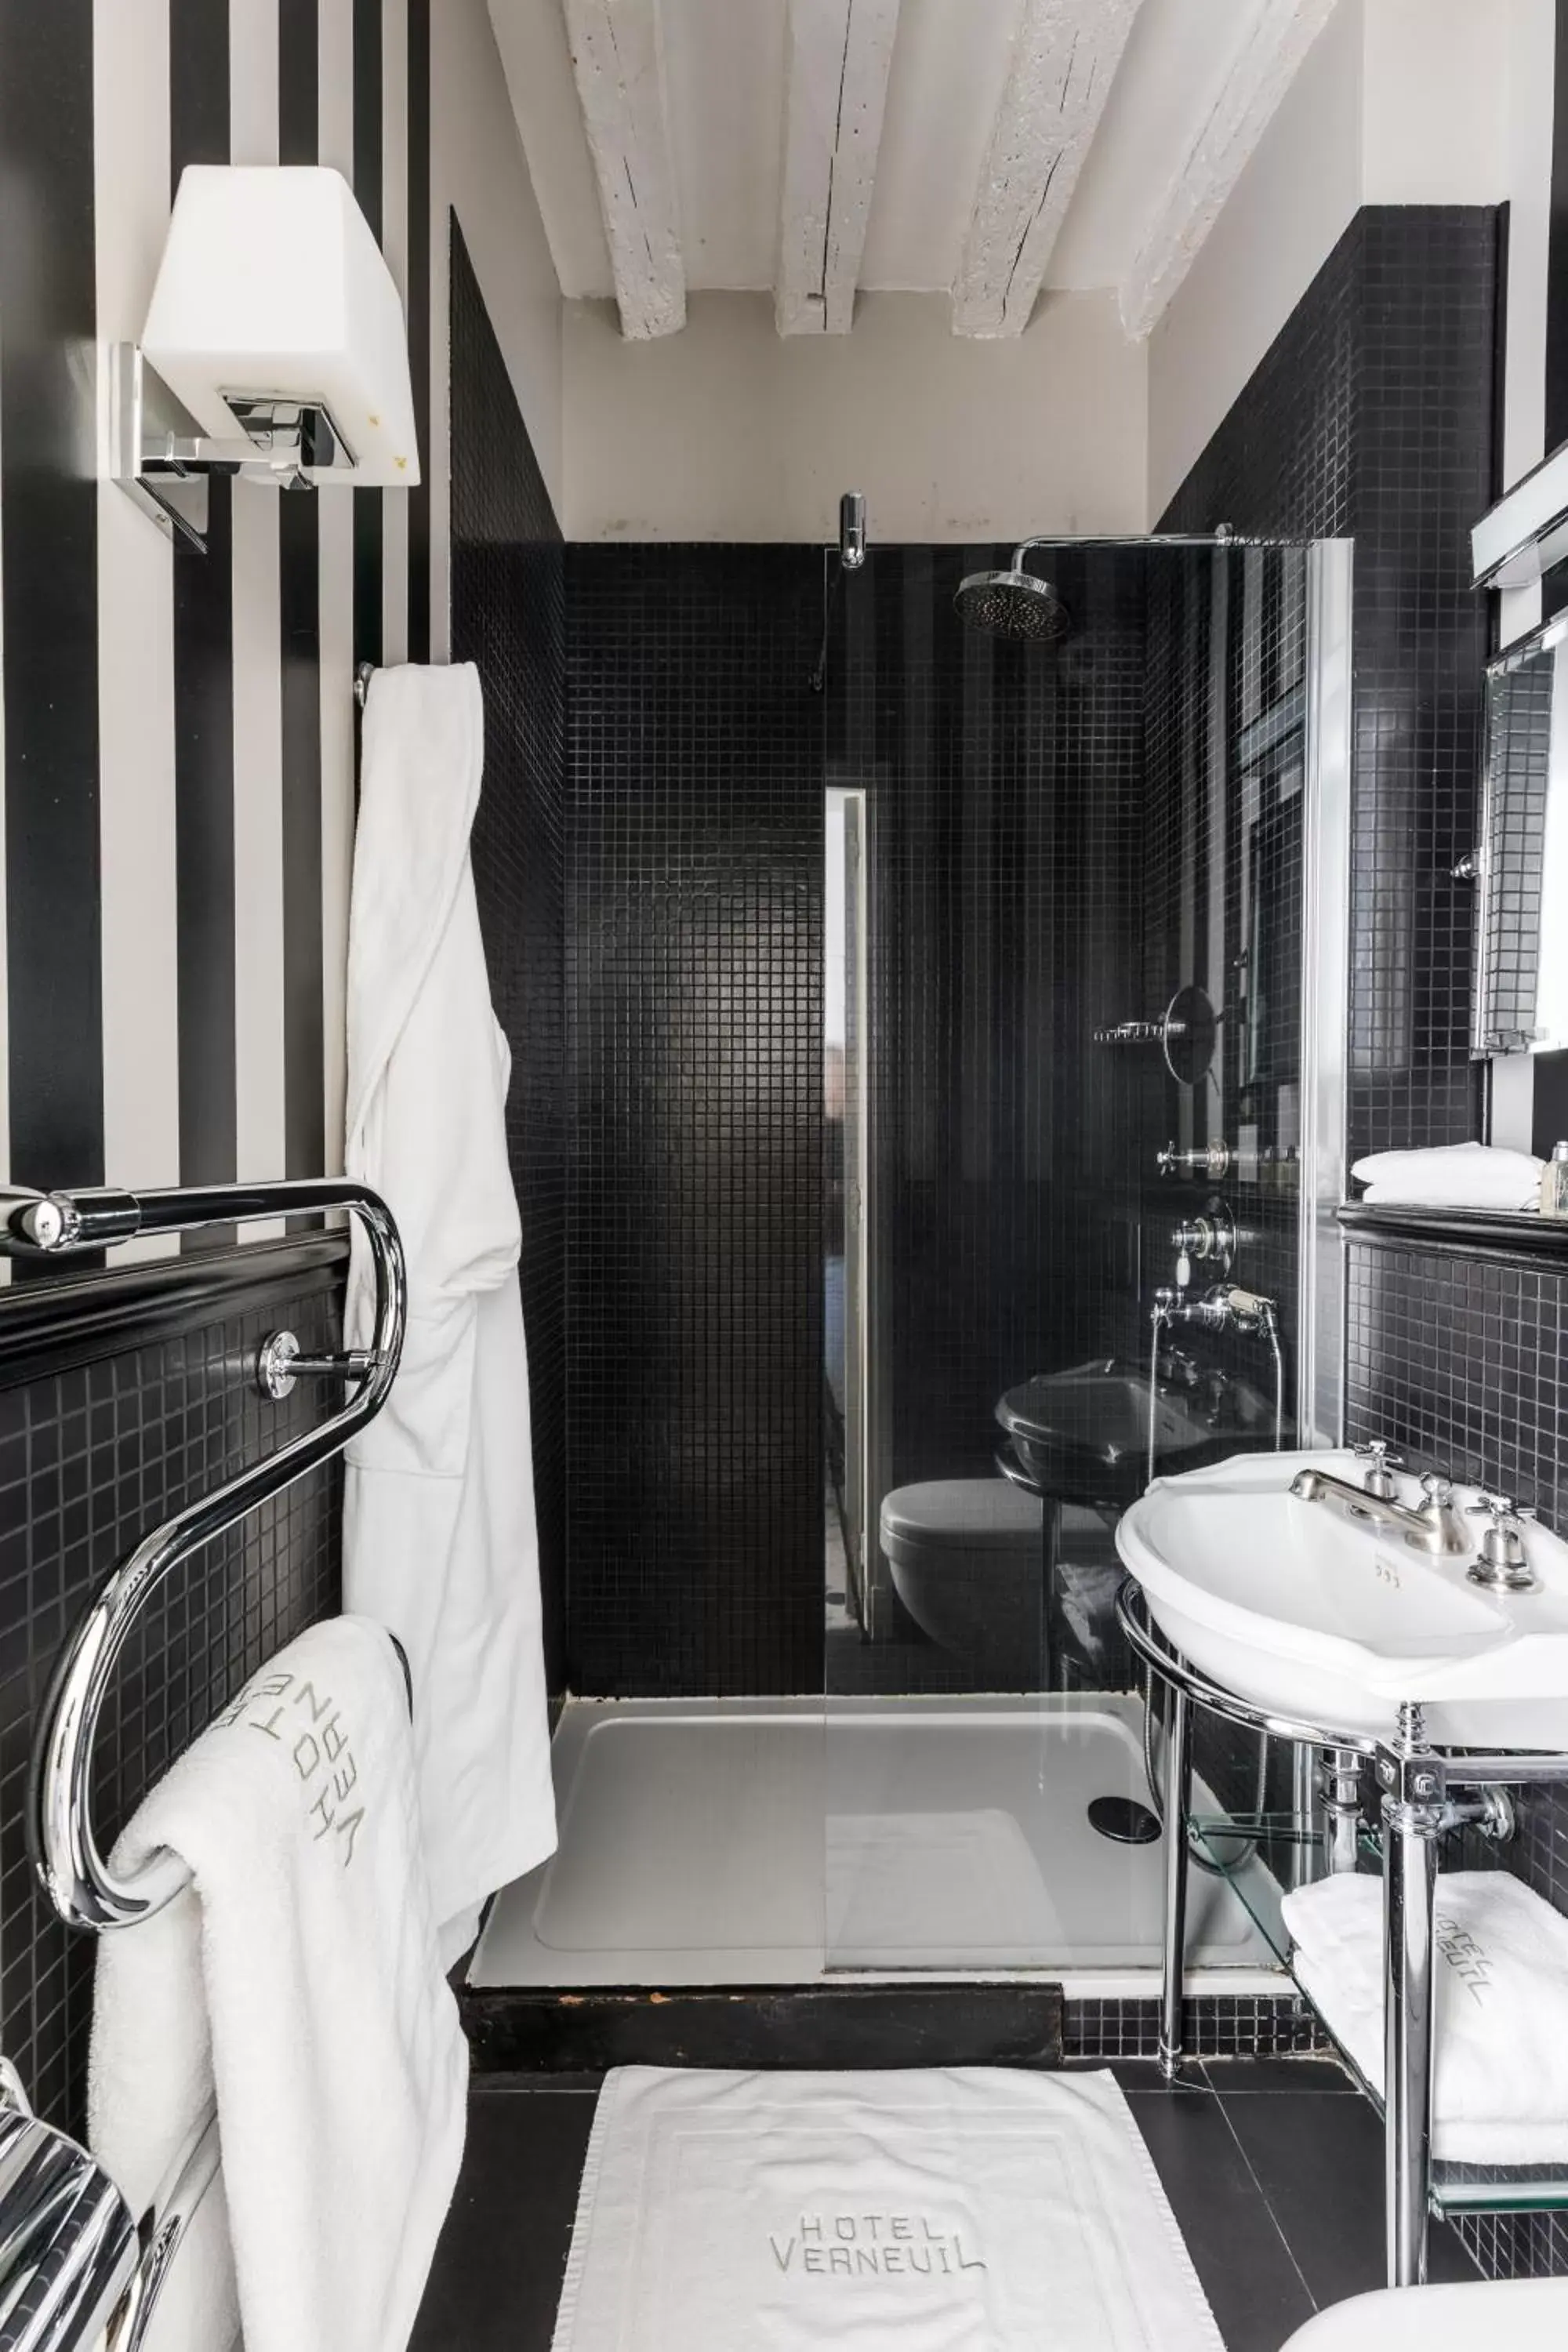 Bathroom in Hotel Verneuil Saint Germain